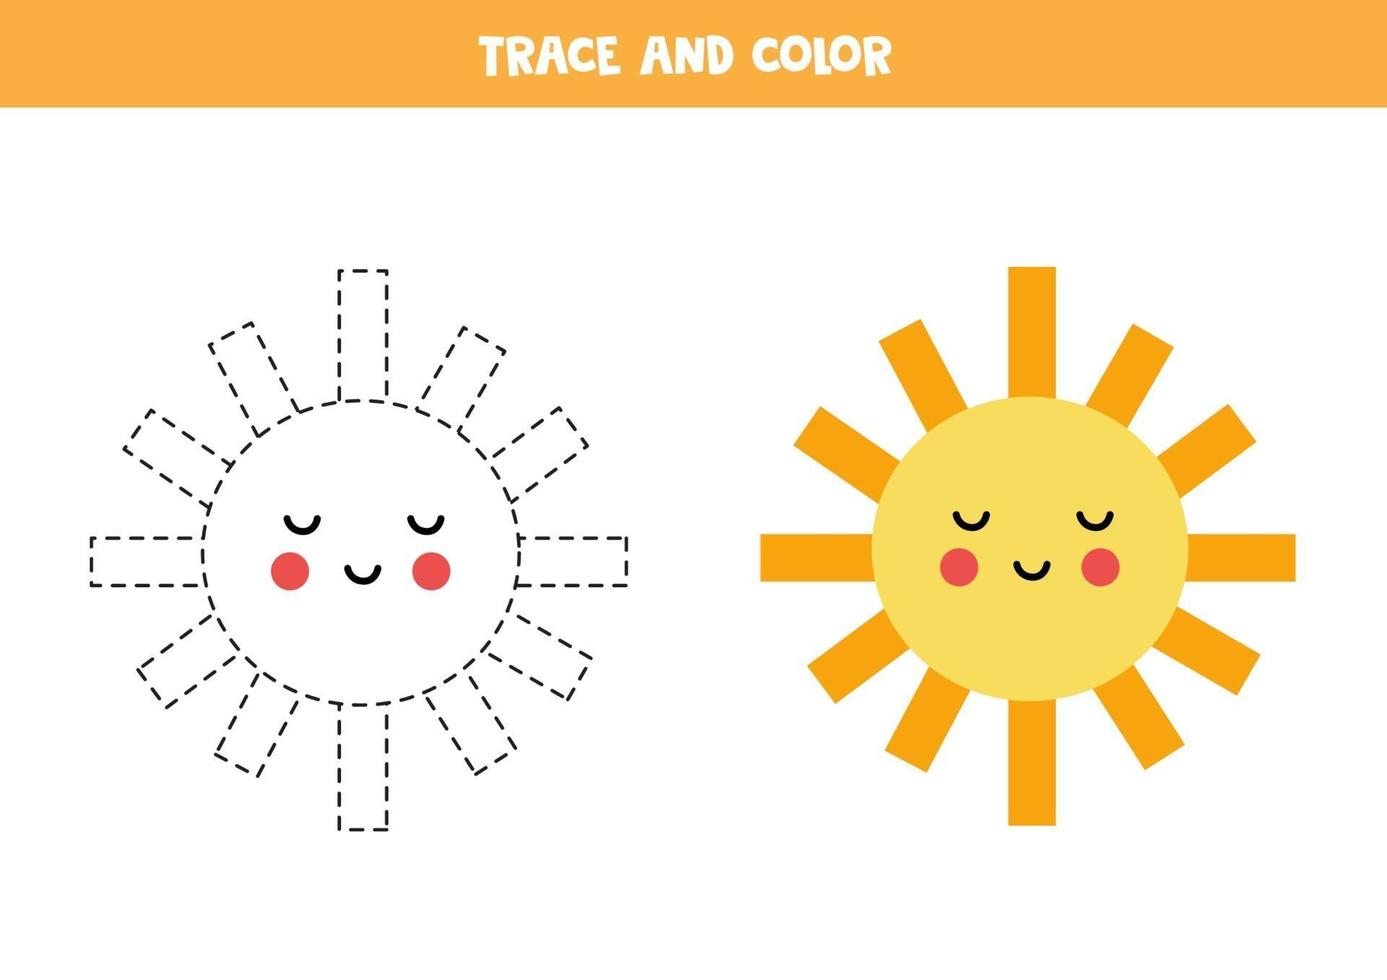 trazar y colorear lindo sol. hoja de trabajo para niños. vector